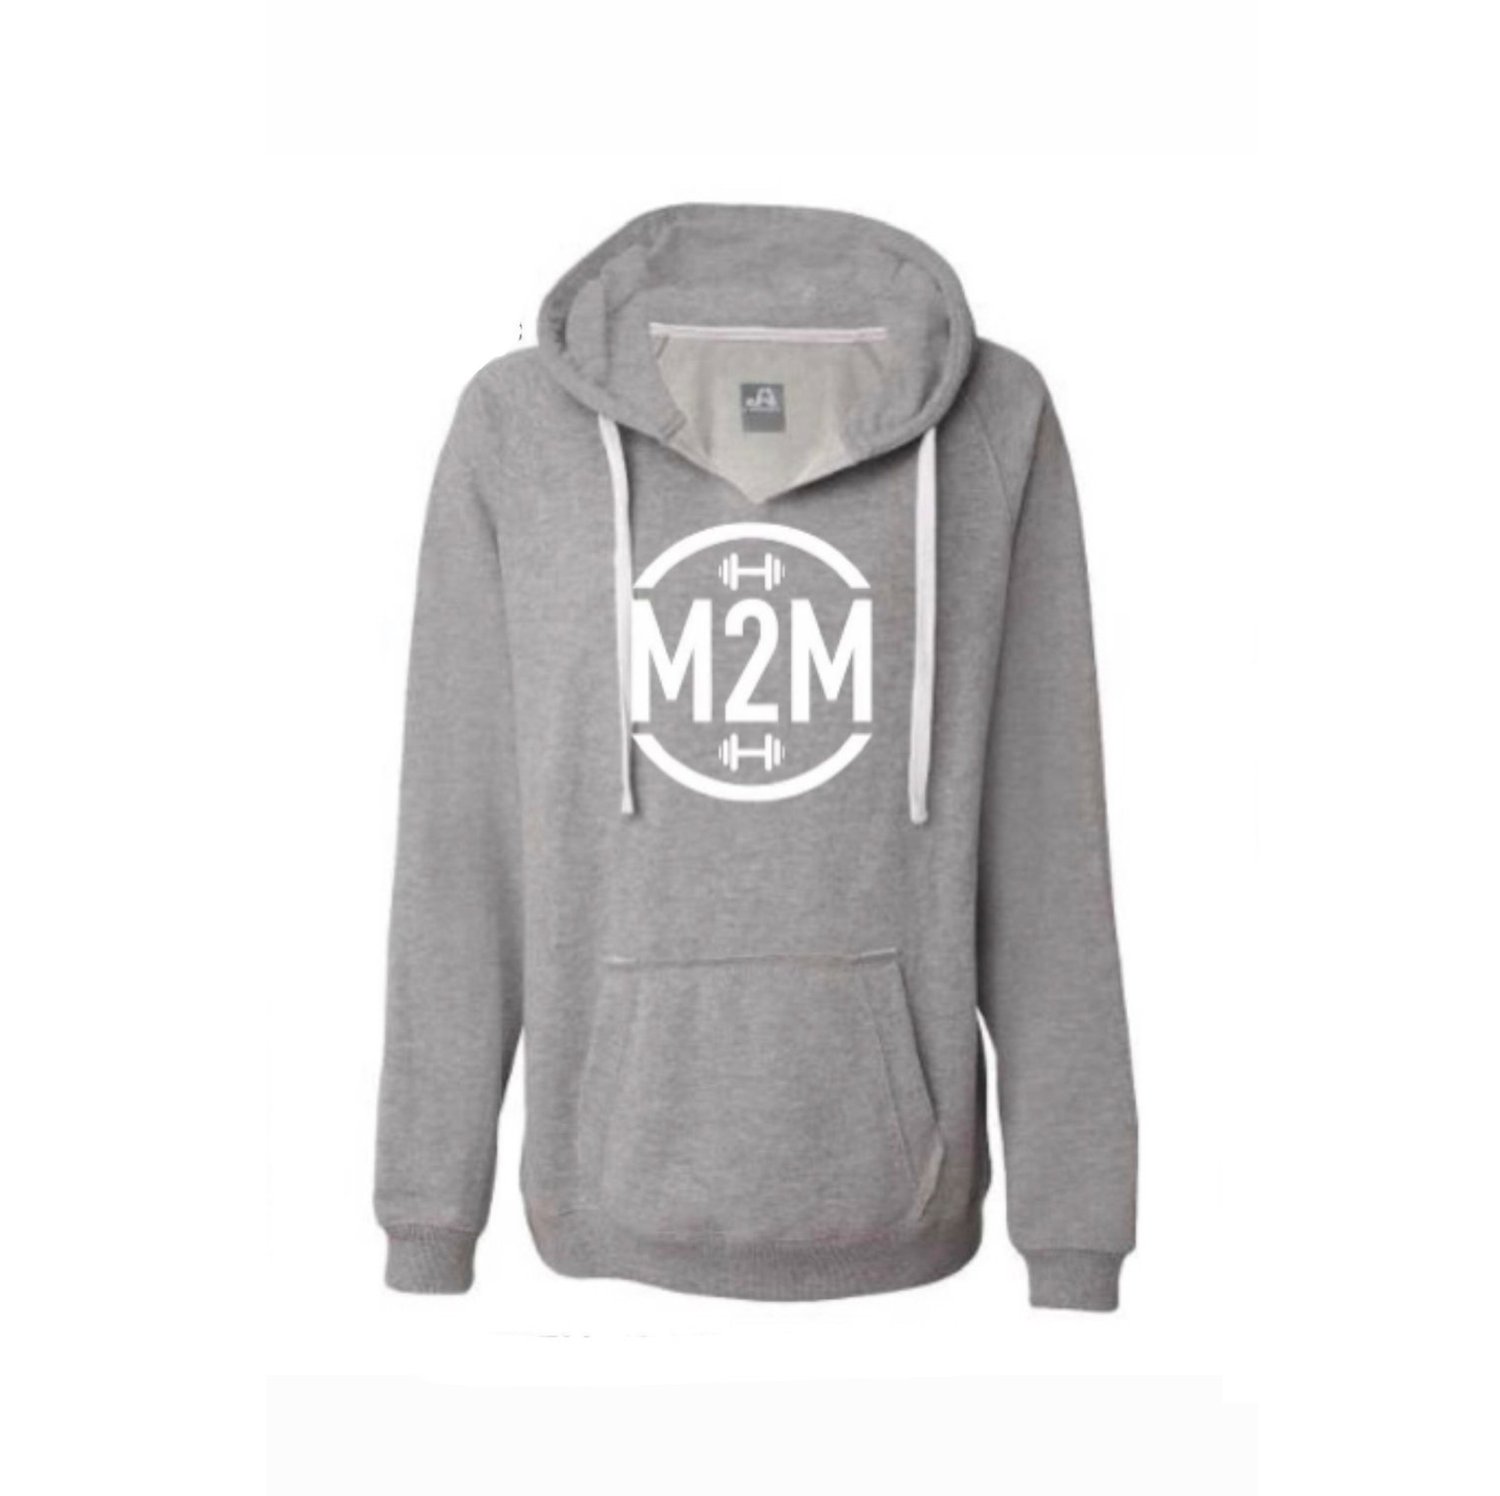 M2M Hoodie Sweatshirt (Gray) — Macros to Muscles Fat Loss